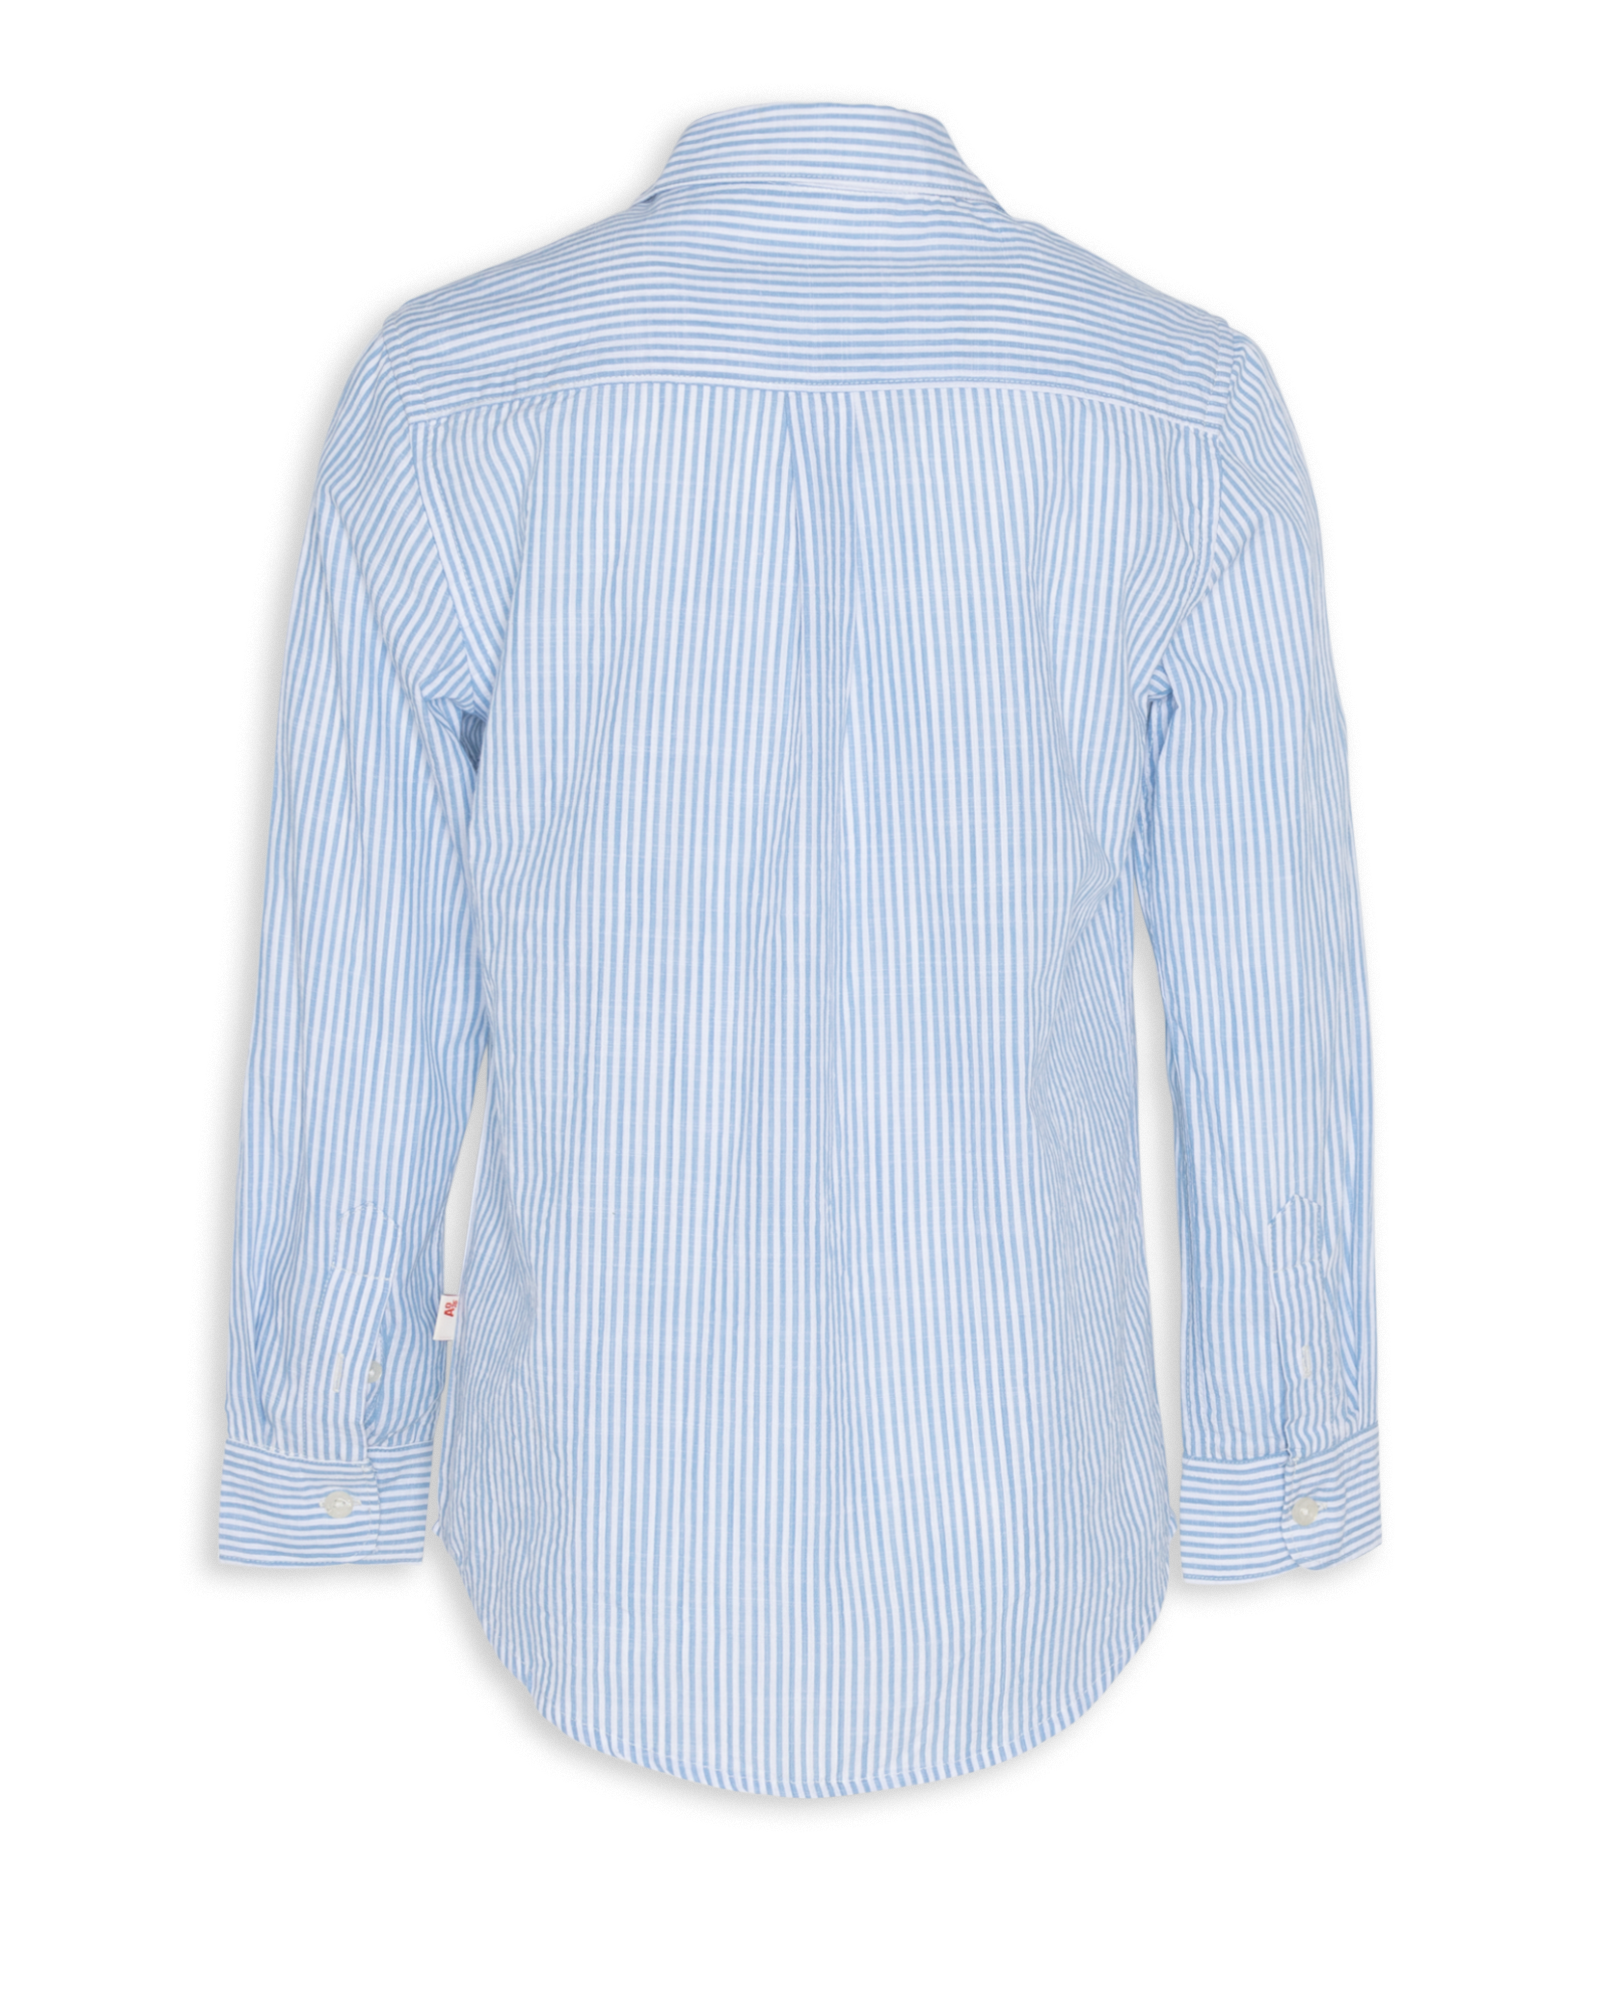 Alan Blue Stripe Shirts - Blue